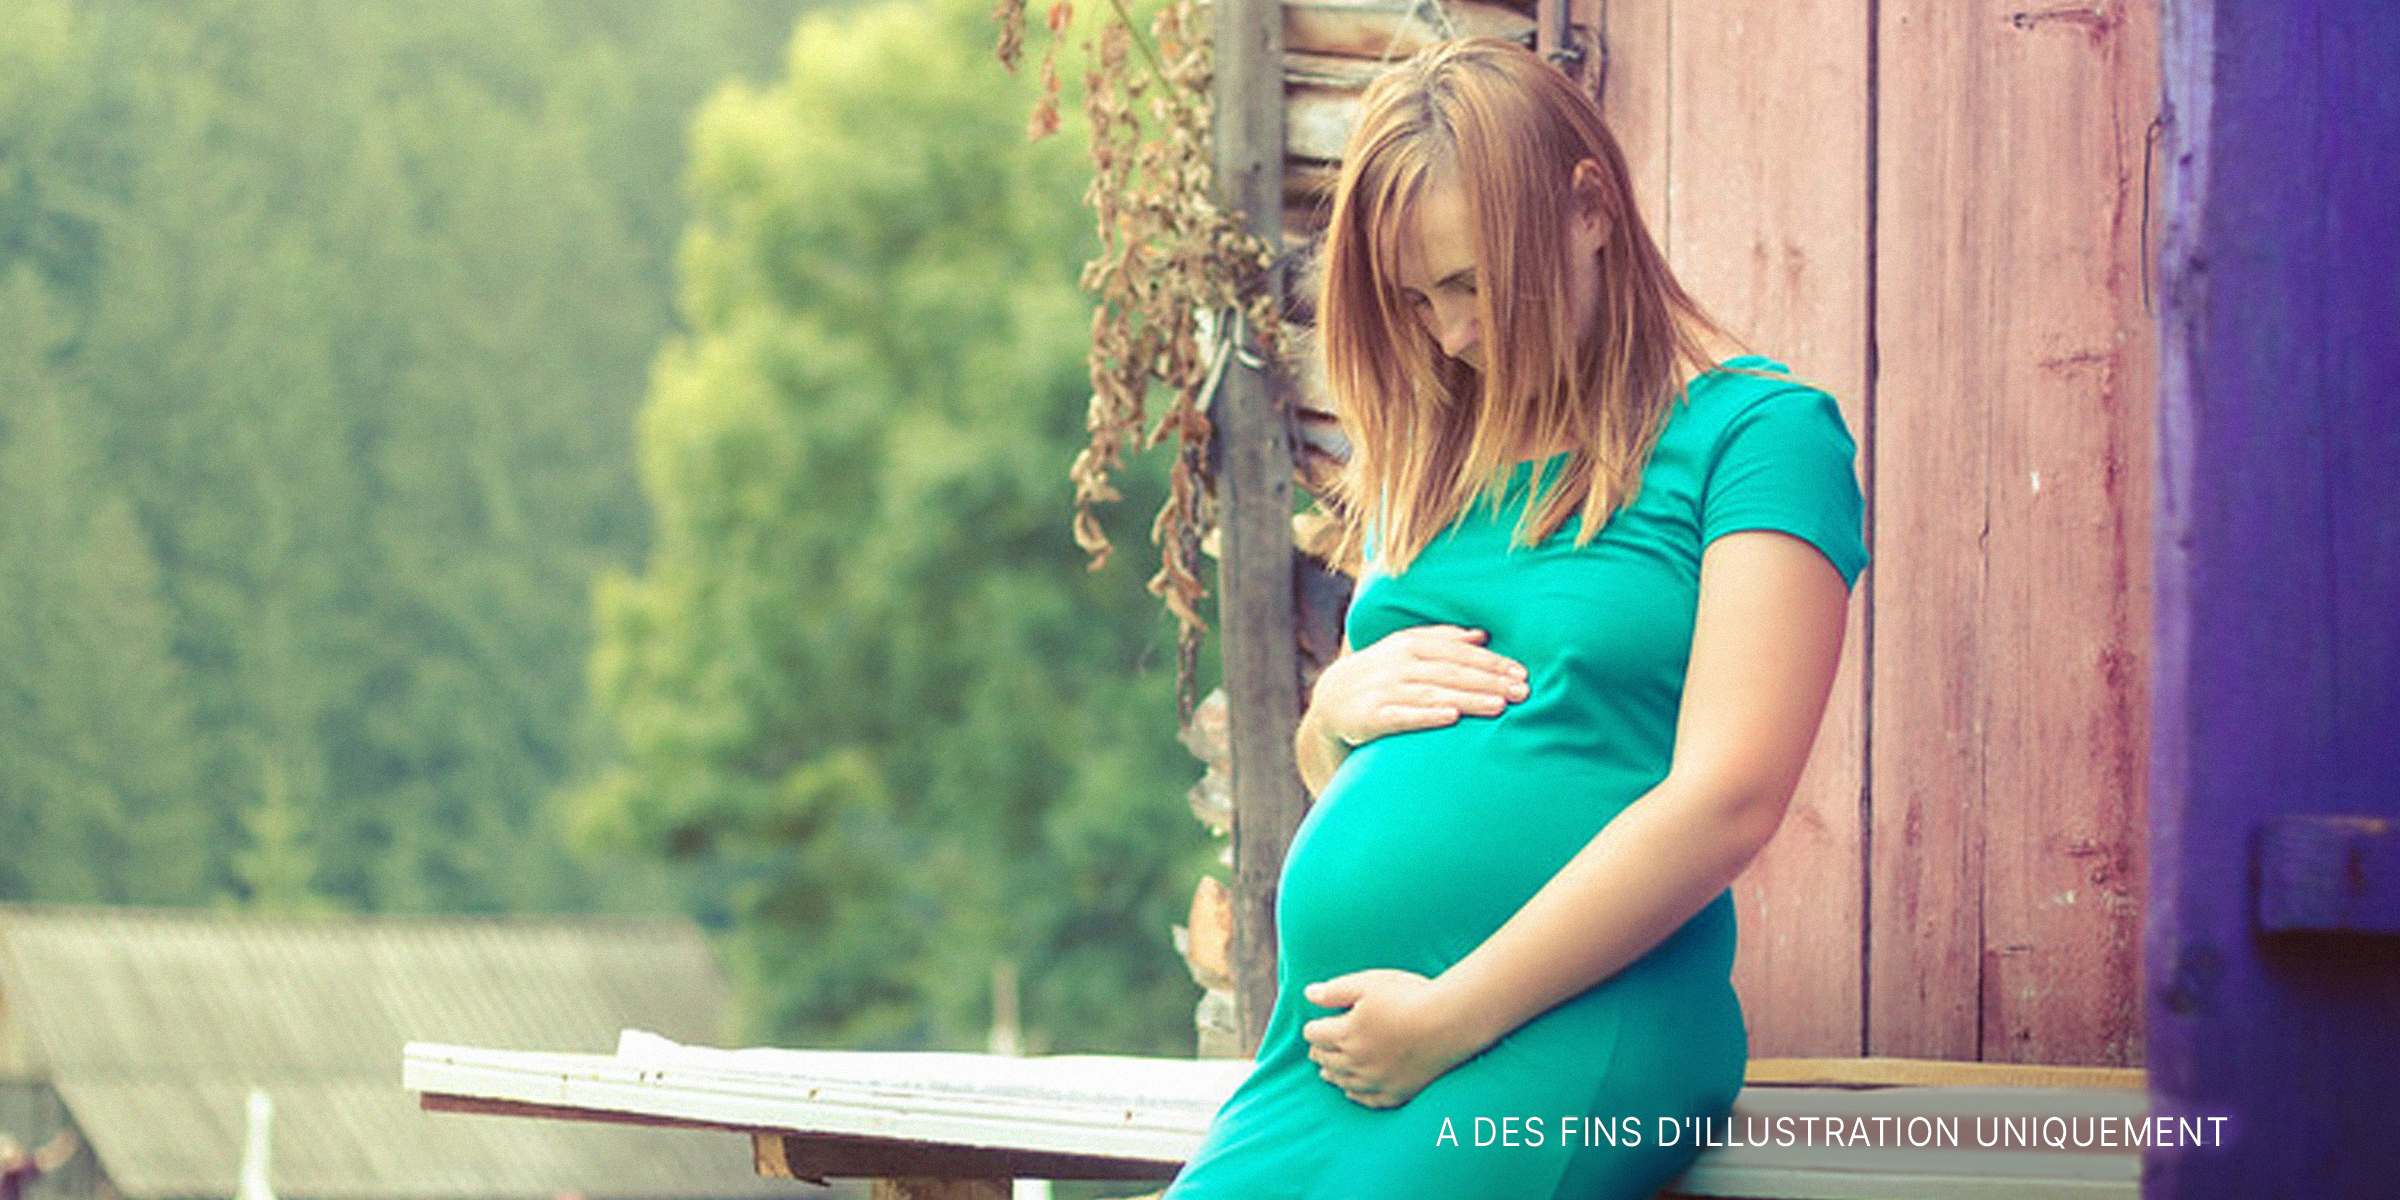 Une femme enceinte tenant son ventre | Source : flickr.com/ (CC BY 2.0) by Juanedc